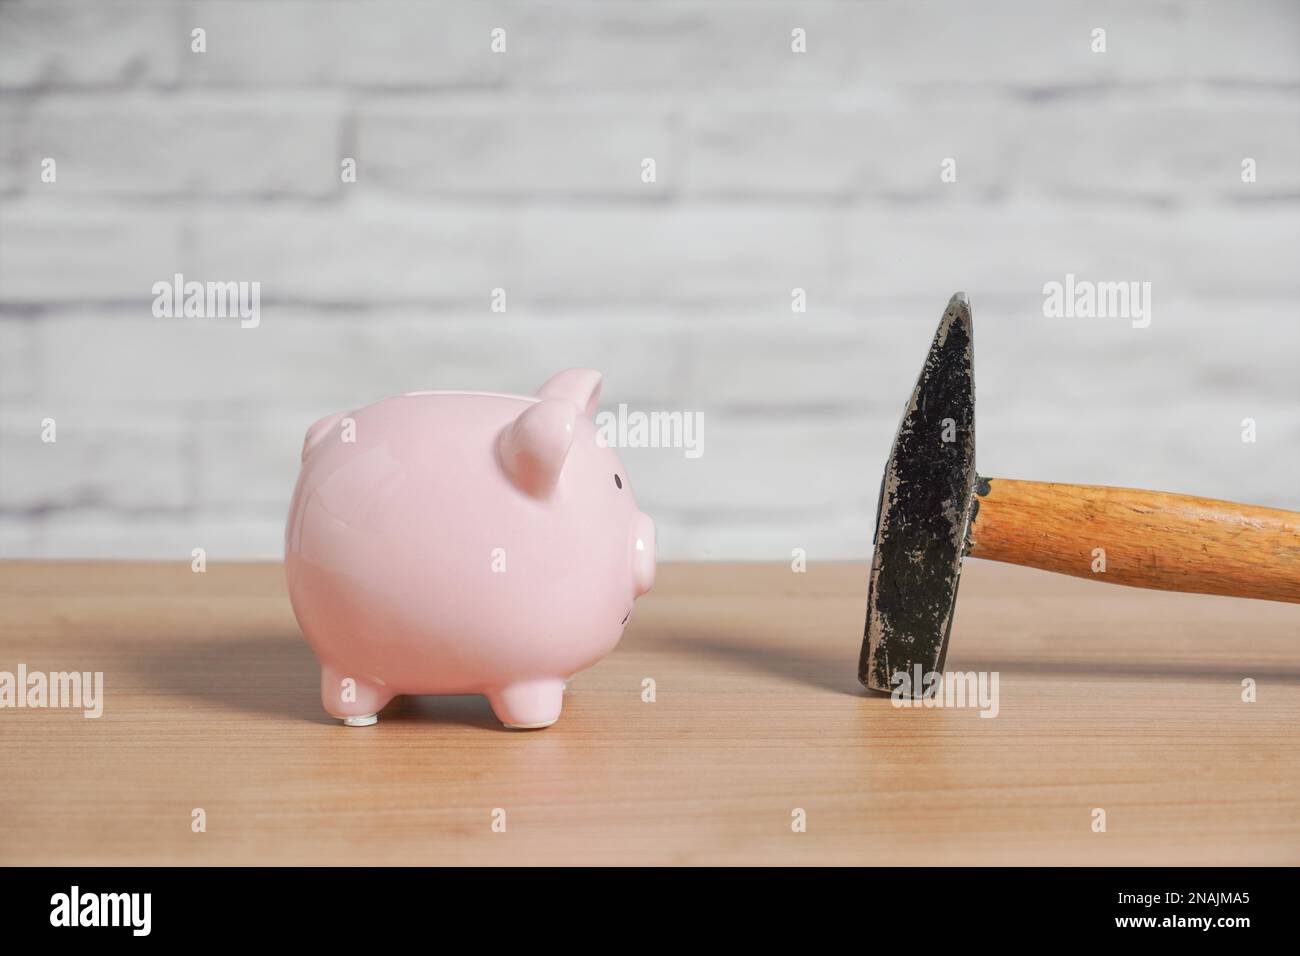 Sparschwein und Hammer - Konzept zum Brechen oder Zerschlagen sparschwein oder Münzbank, um Ersparnisse zu plündern Stockfoto